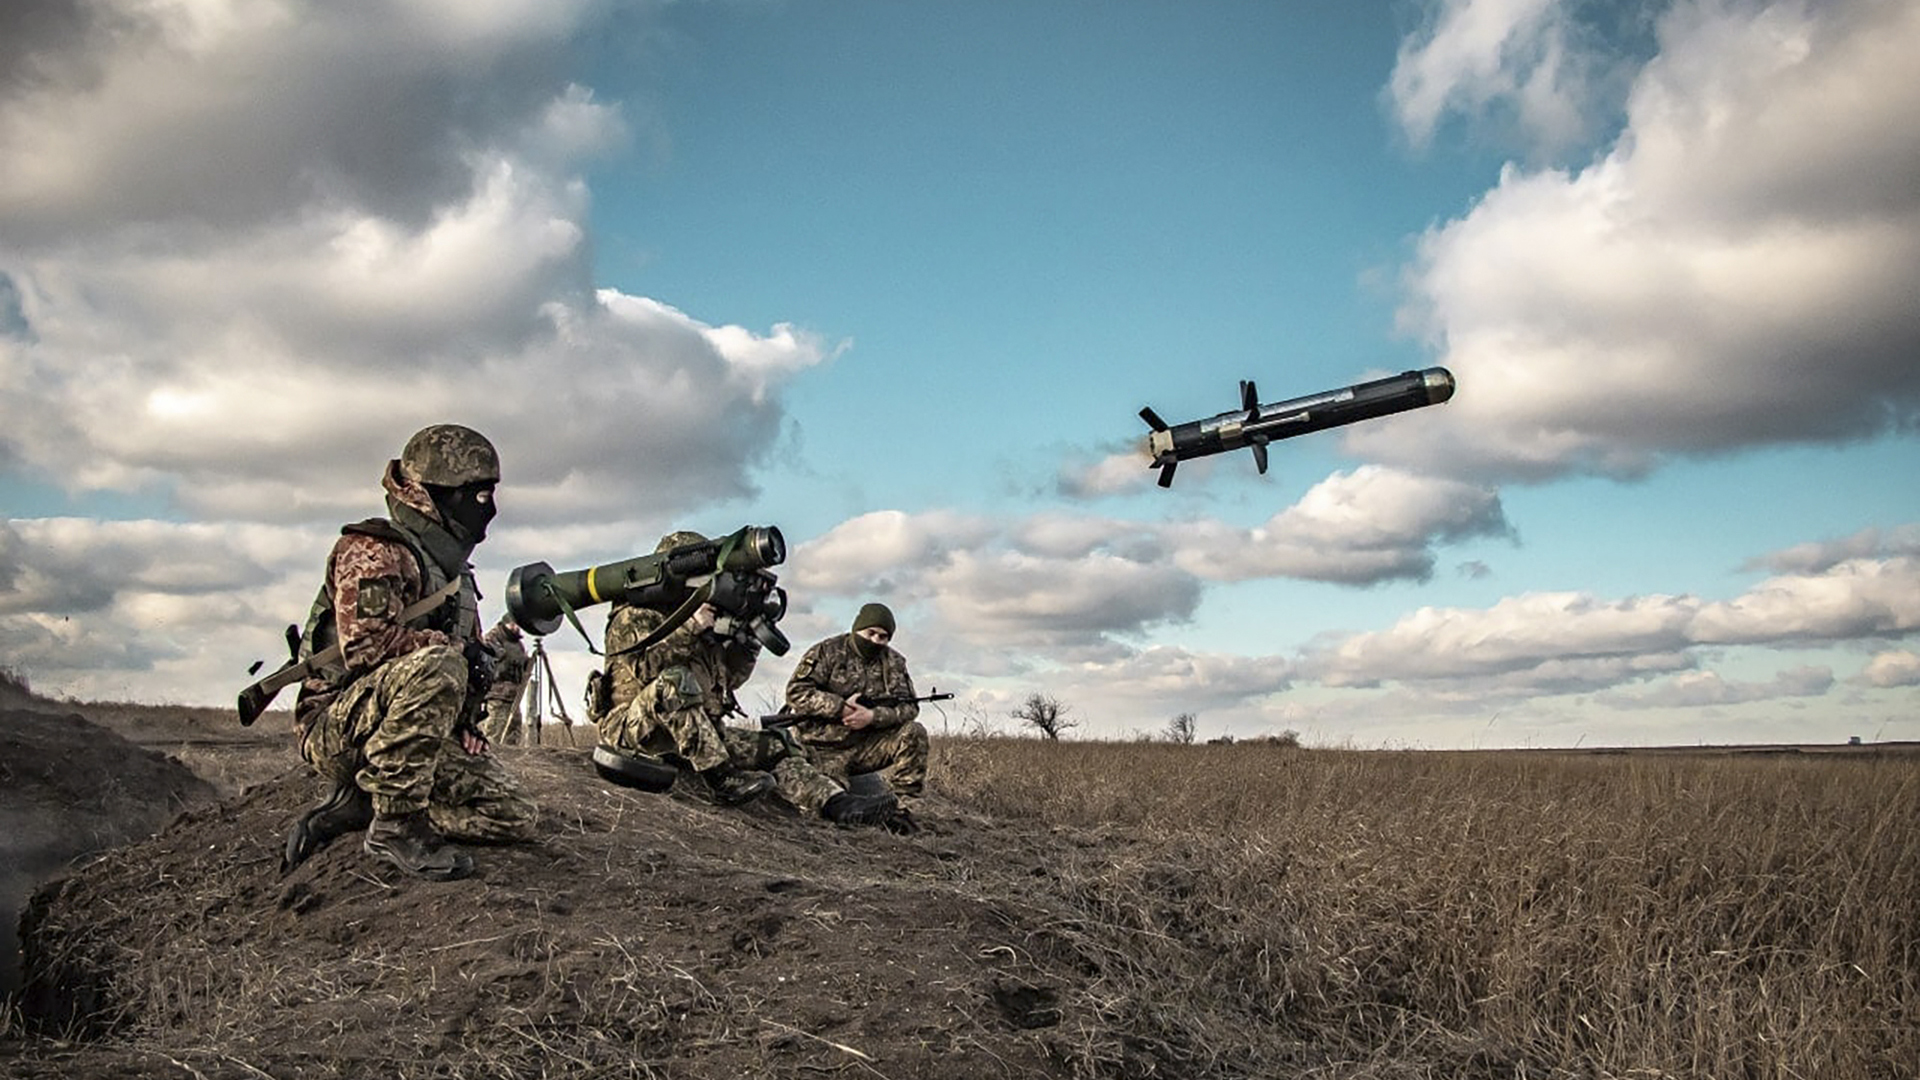 Ukrainische Soldaten während einer Militärübung in der Region Donezk. | picture alliance/dpa/Ukrainian D